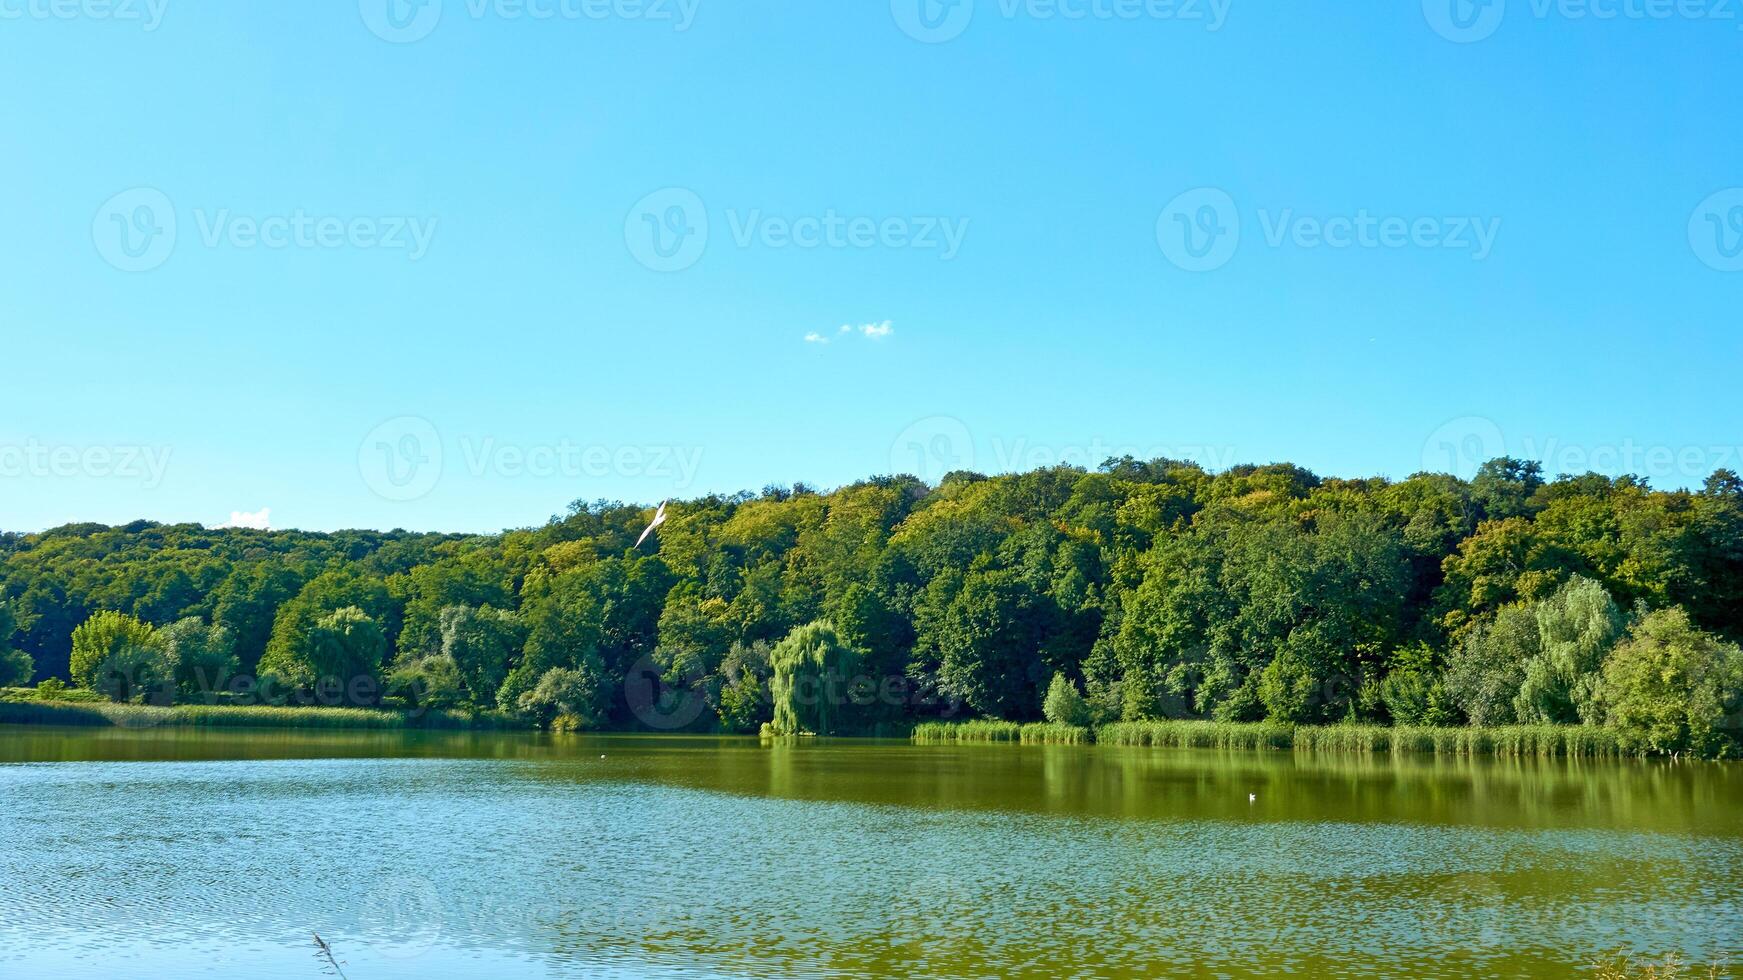 bosque azul lago rodeado por arboles y cañas.calma verano foto